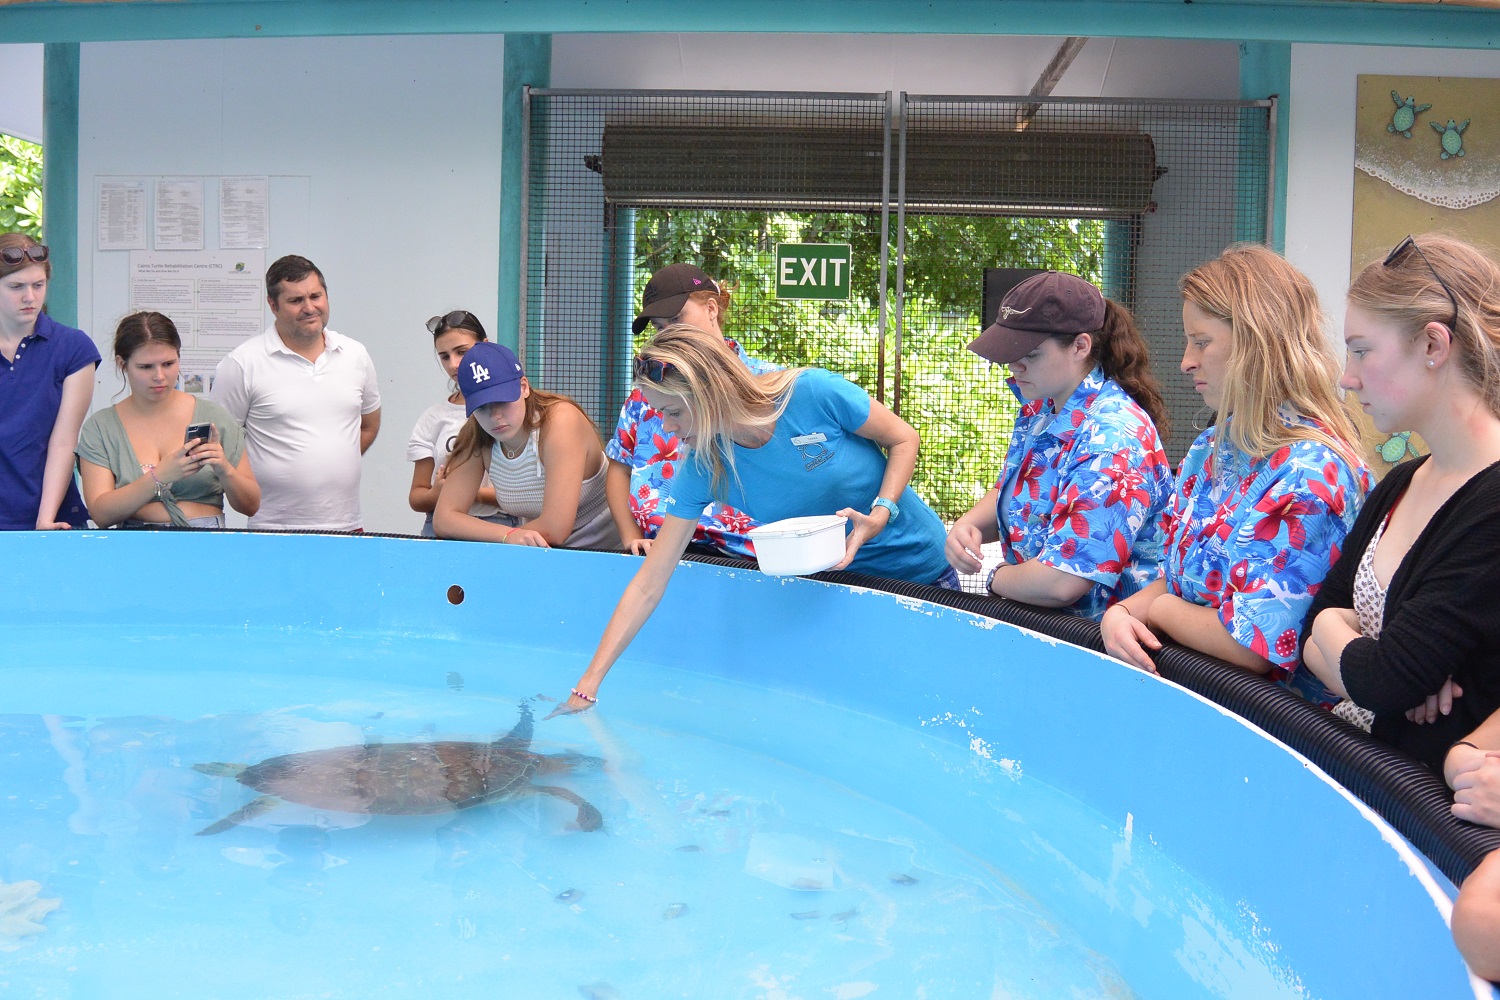 Cairns Turtle Rehabilitation Centre